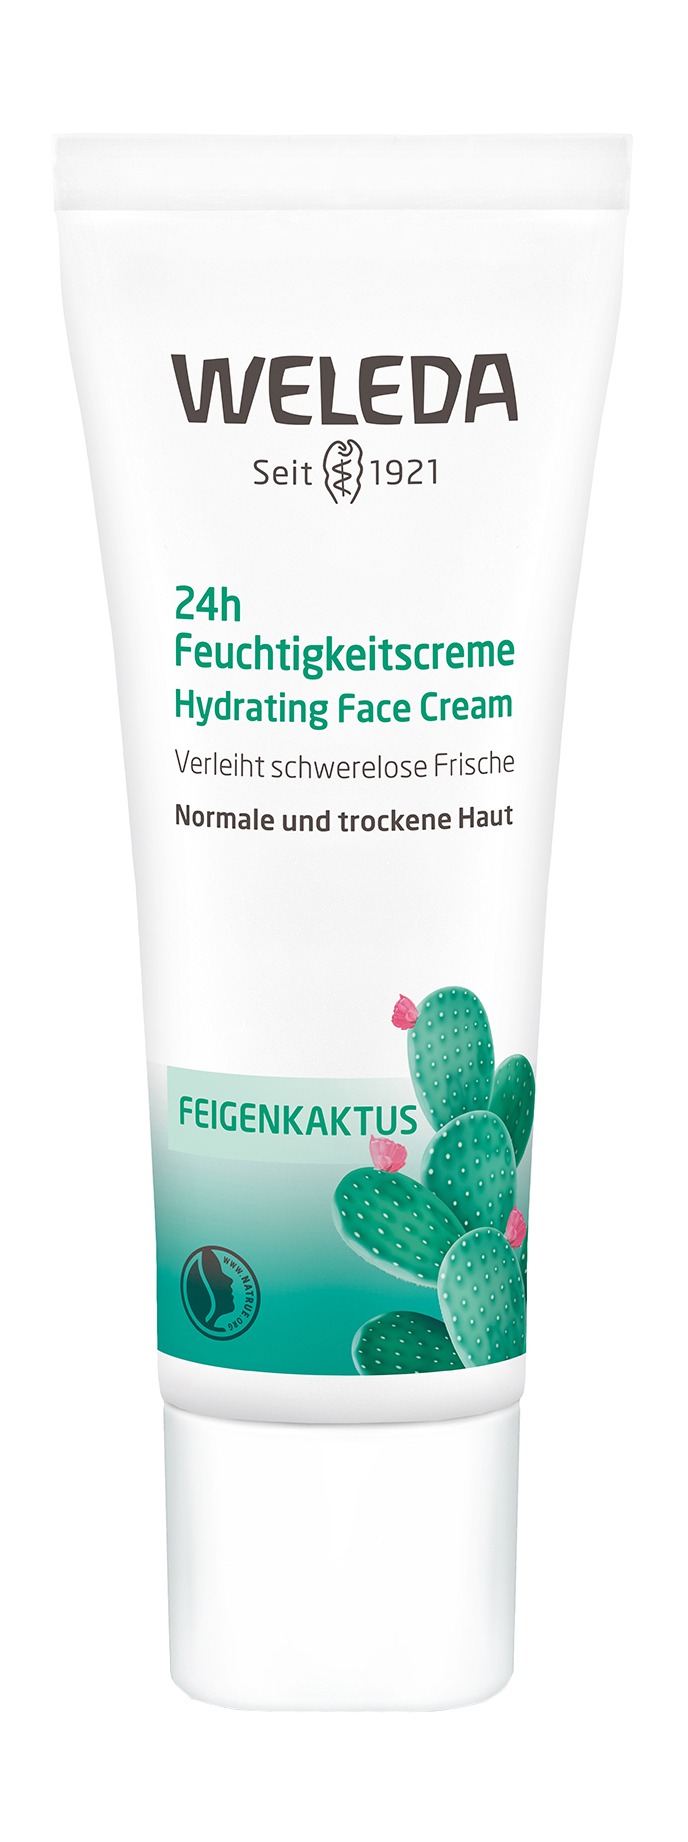 Купить Крем для лица Weleda Feigenkaktus 24h Hydrating Face Cream